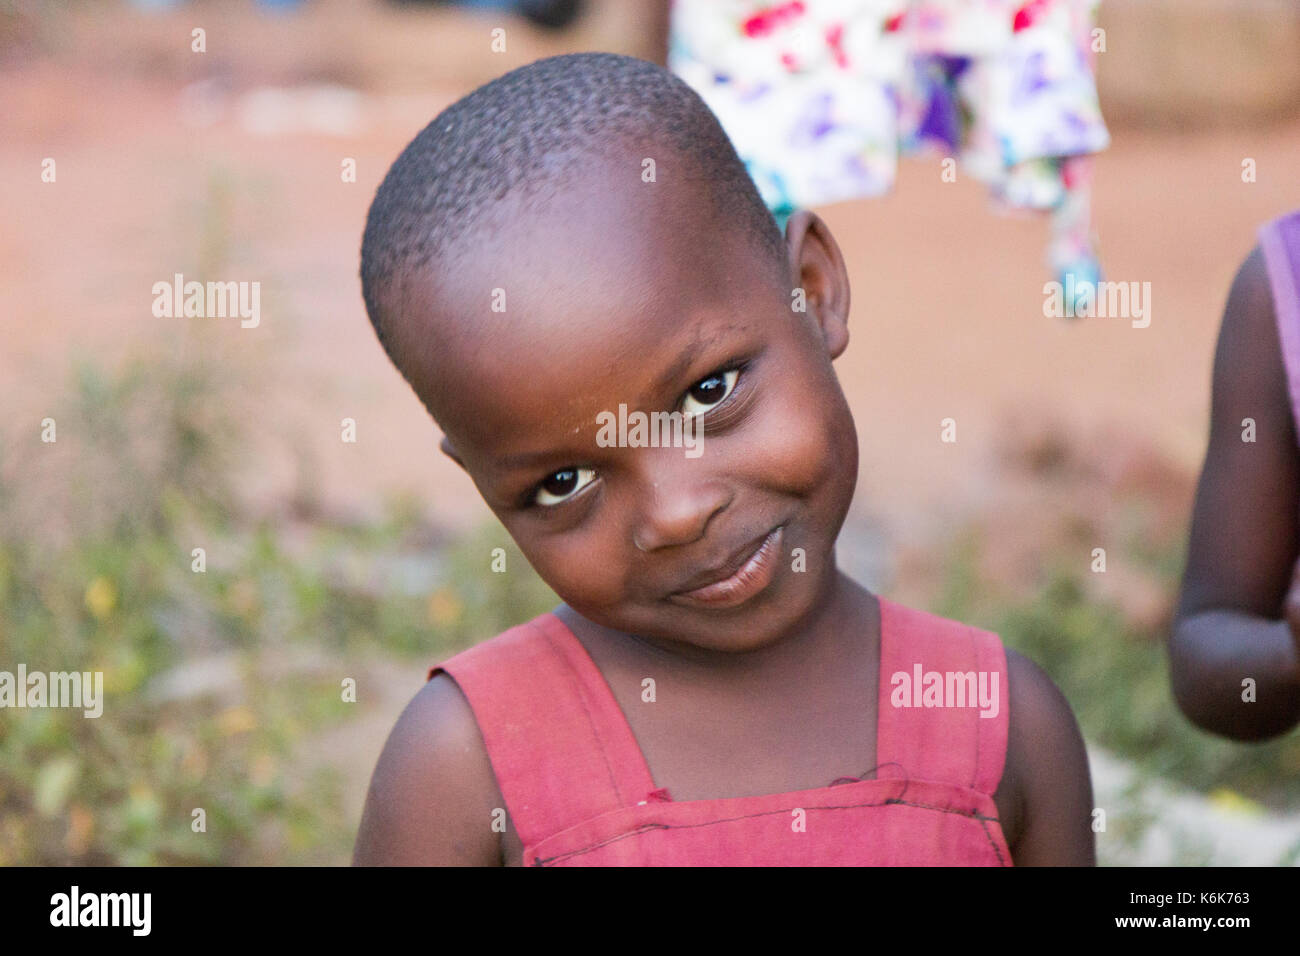 Eine süße kleine schwarze Jugendliche Alter Mädchen neigen Sie Ihren Kopf lächelnd. Sie ist in einem roten Kleid. Stockfoto